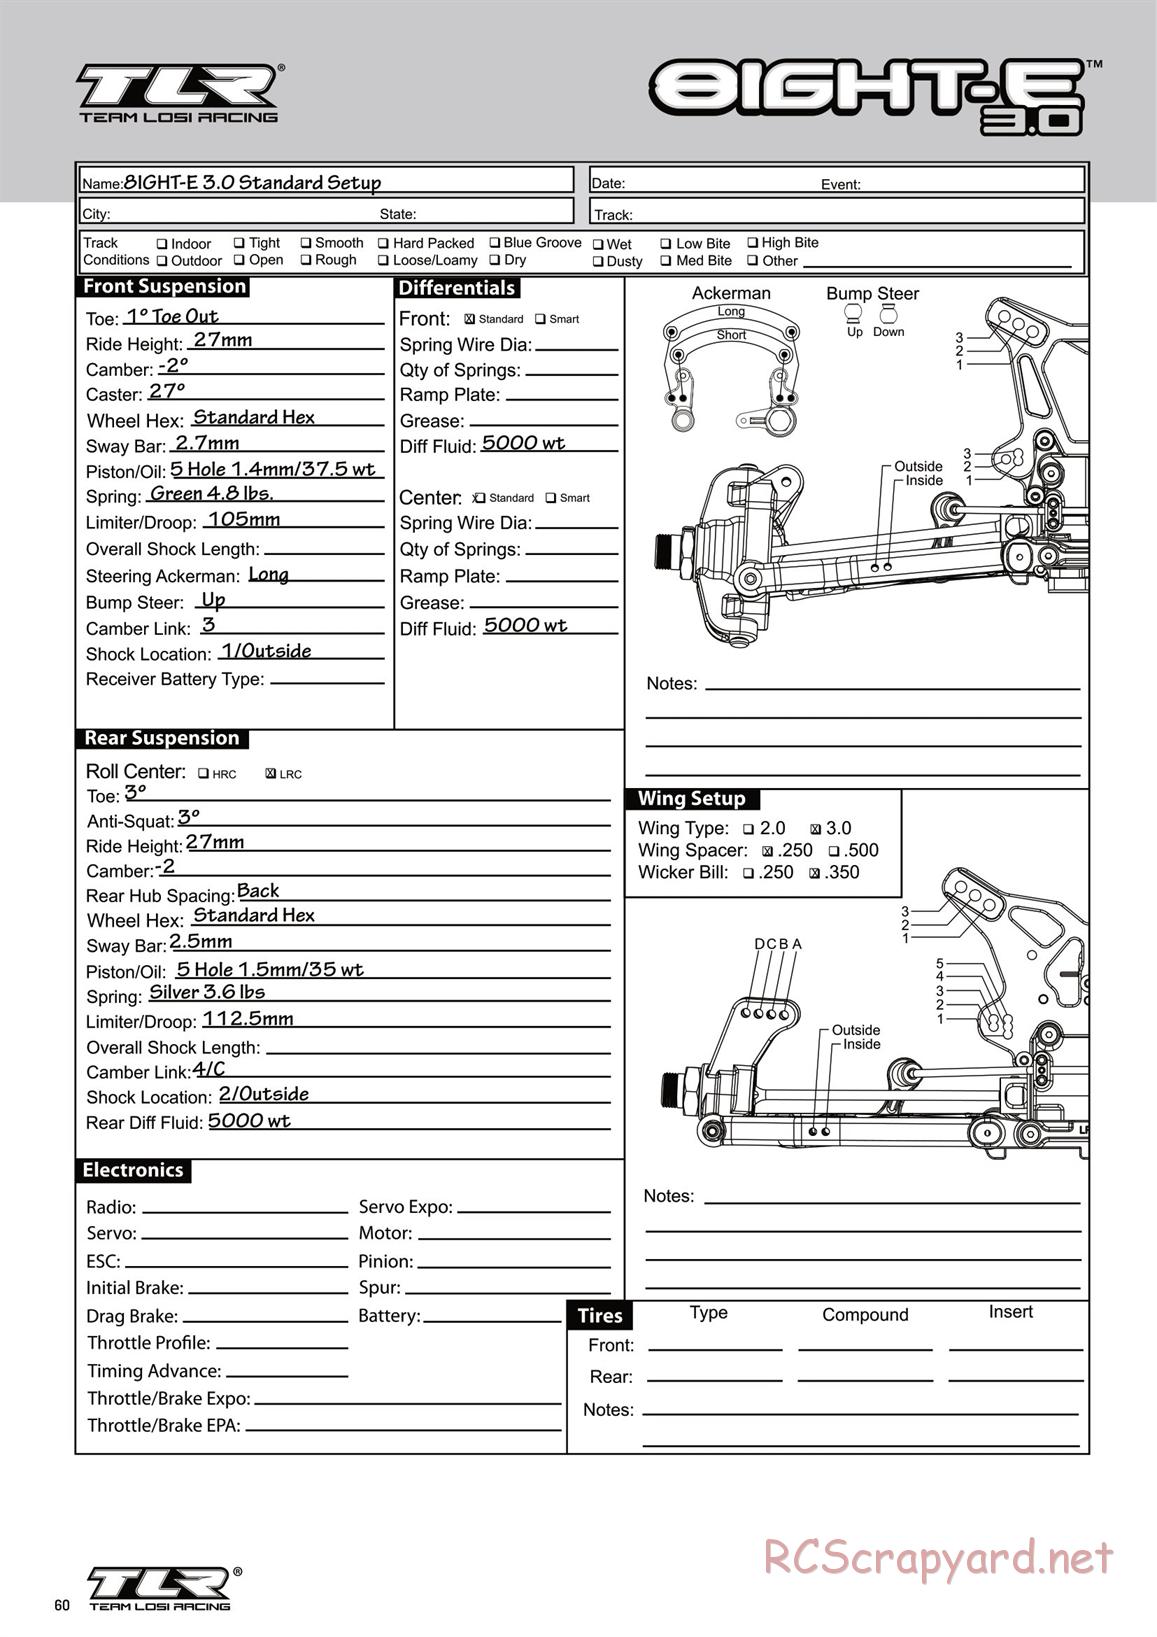 Team Losi - 8ight-E 3.0 - Manual - Page 1